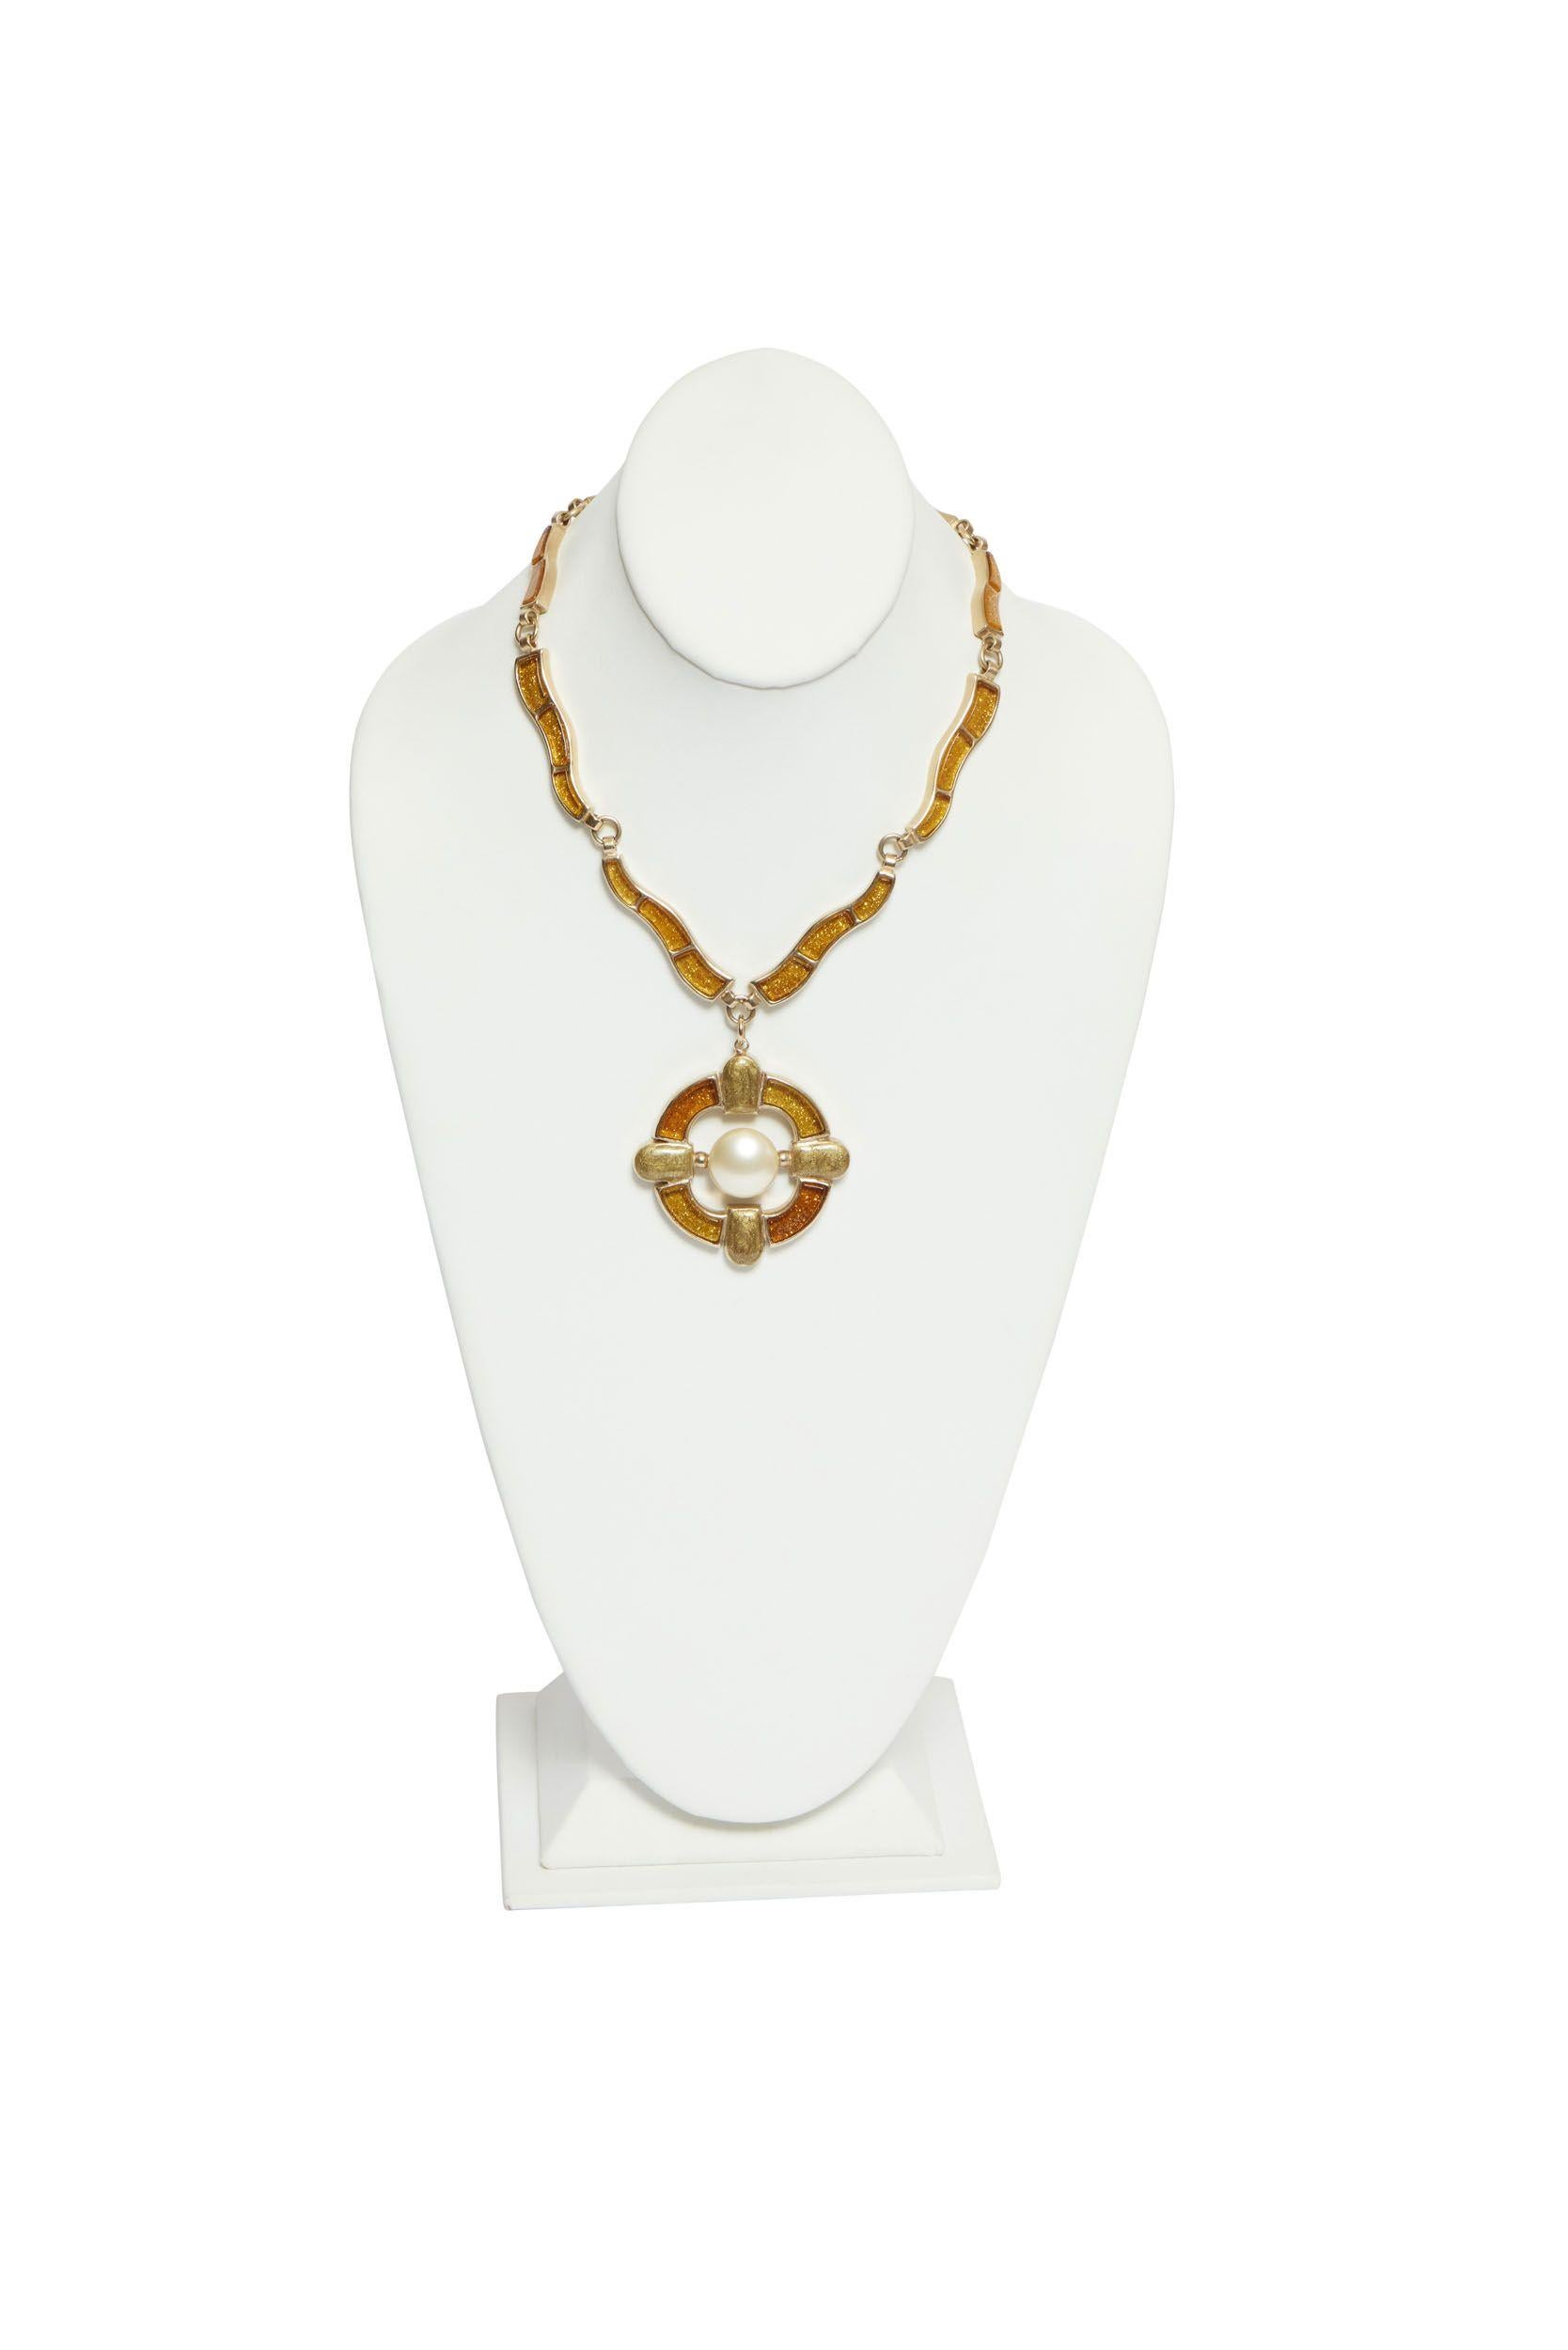 Chanel gripoix maltese cross pendant necklace. Collection autumn 2007. Pendant D. 2.5